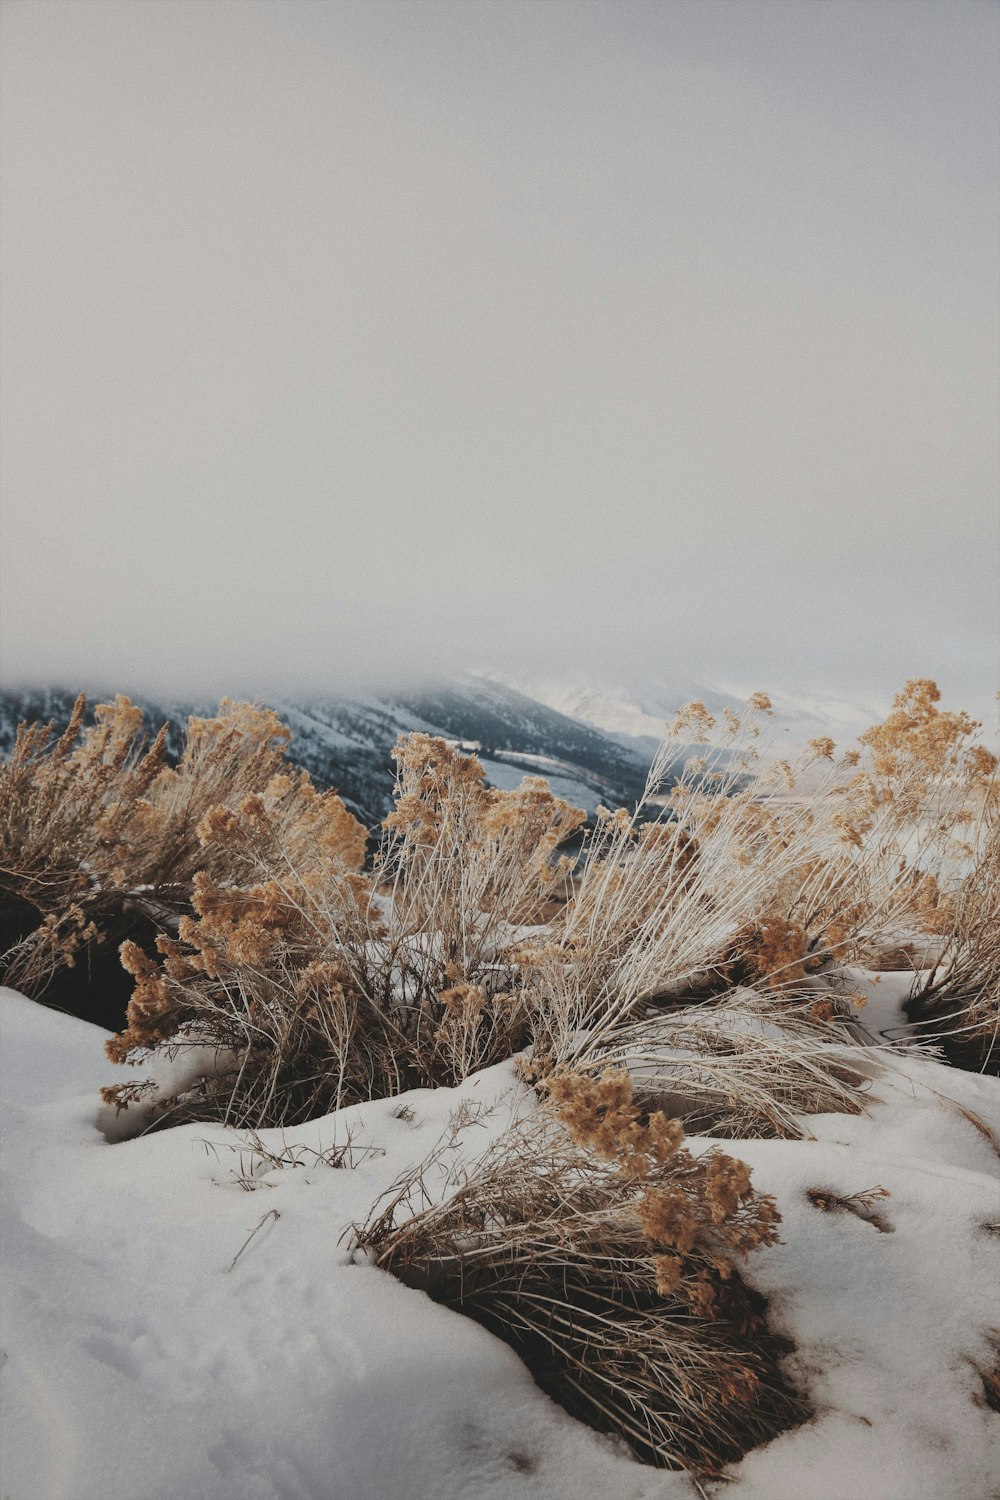 ein schneebedecktes Feld mit einem Berg im Hintergrund